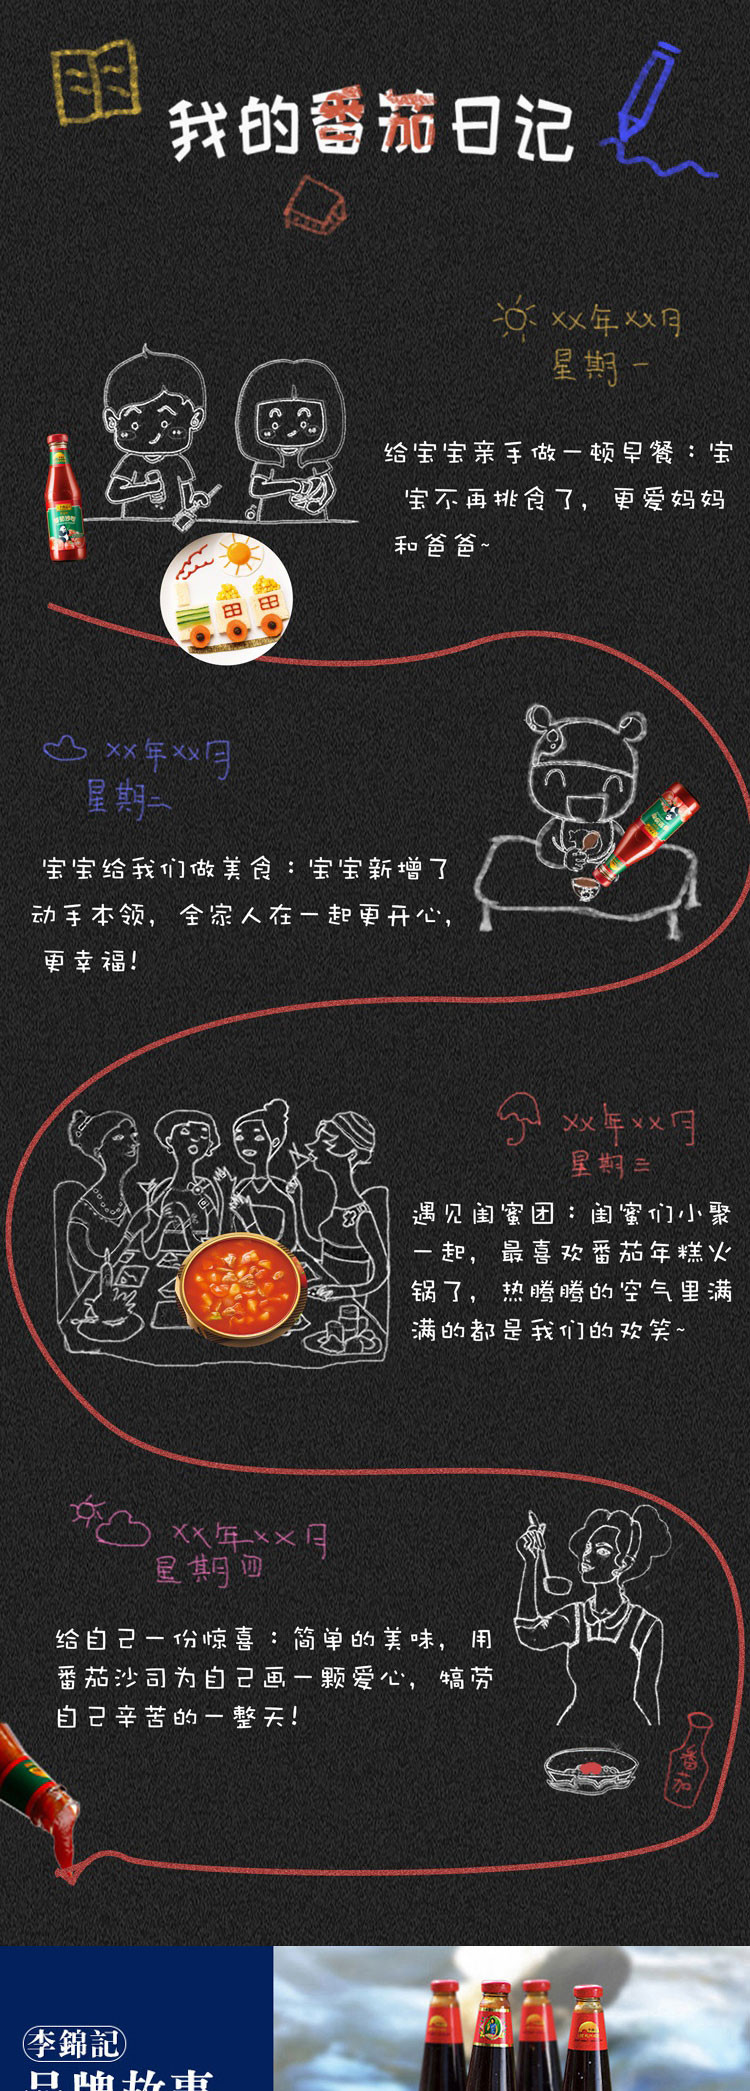 李锦记 番茄酱西红柿沙司 340g